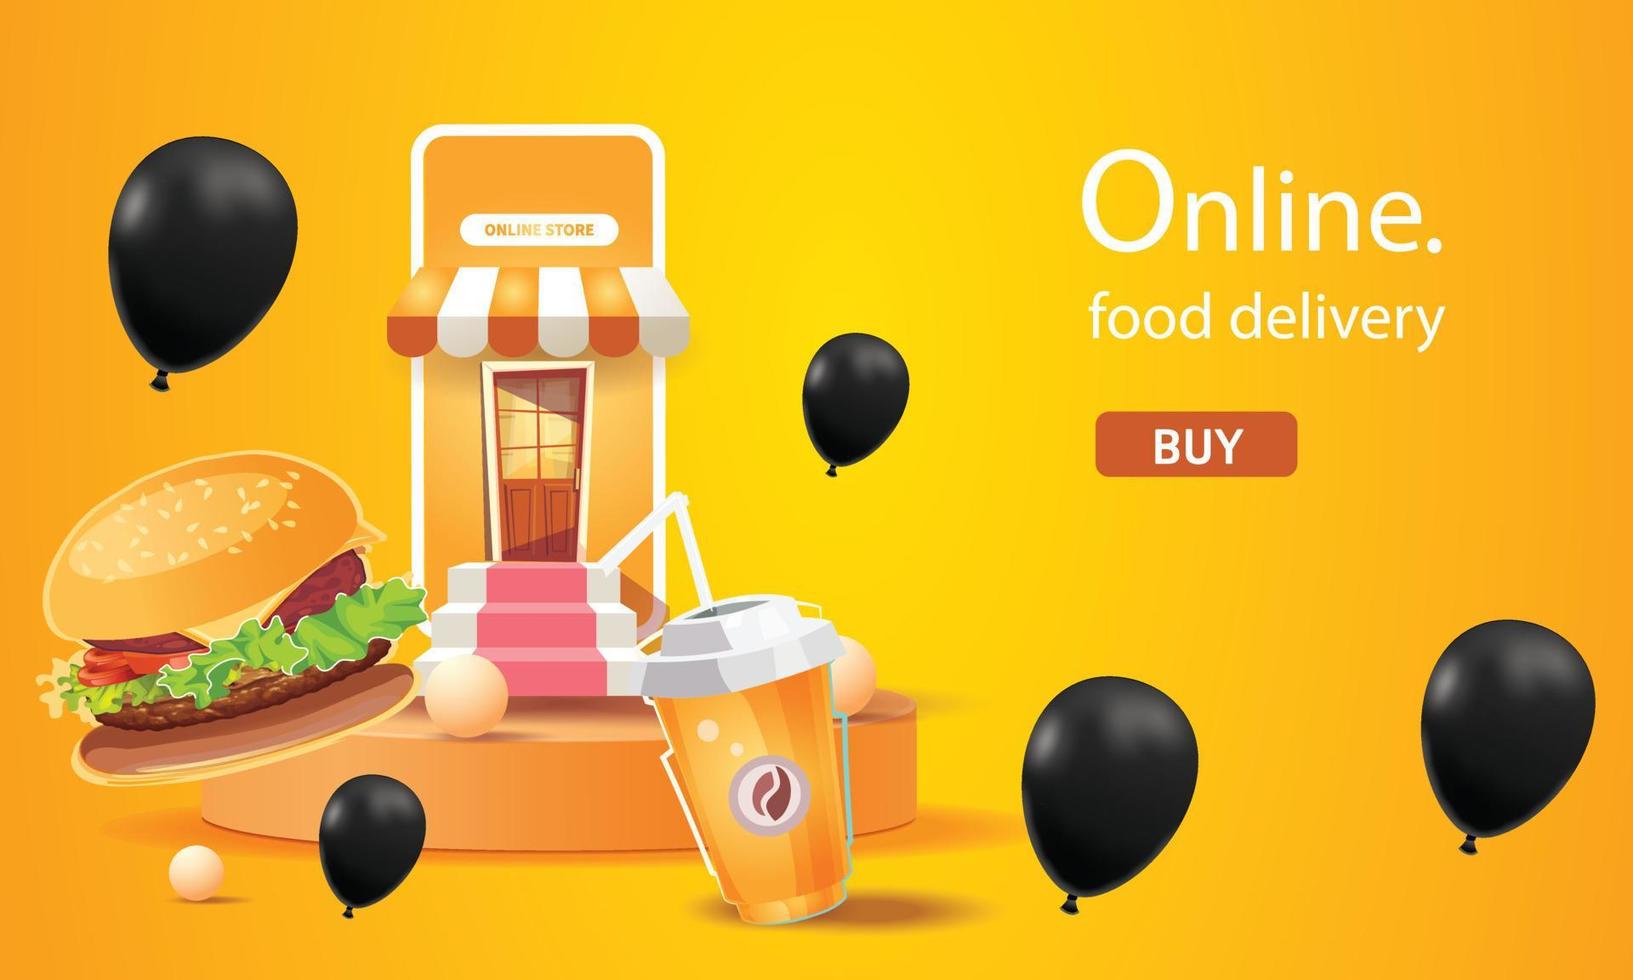 Entrega de alimentos en línea en el teléfono fondo naranja ilustración vectorial concepto de diseño de comida rápida promoción de tienda de negocios transporte a casa vector